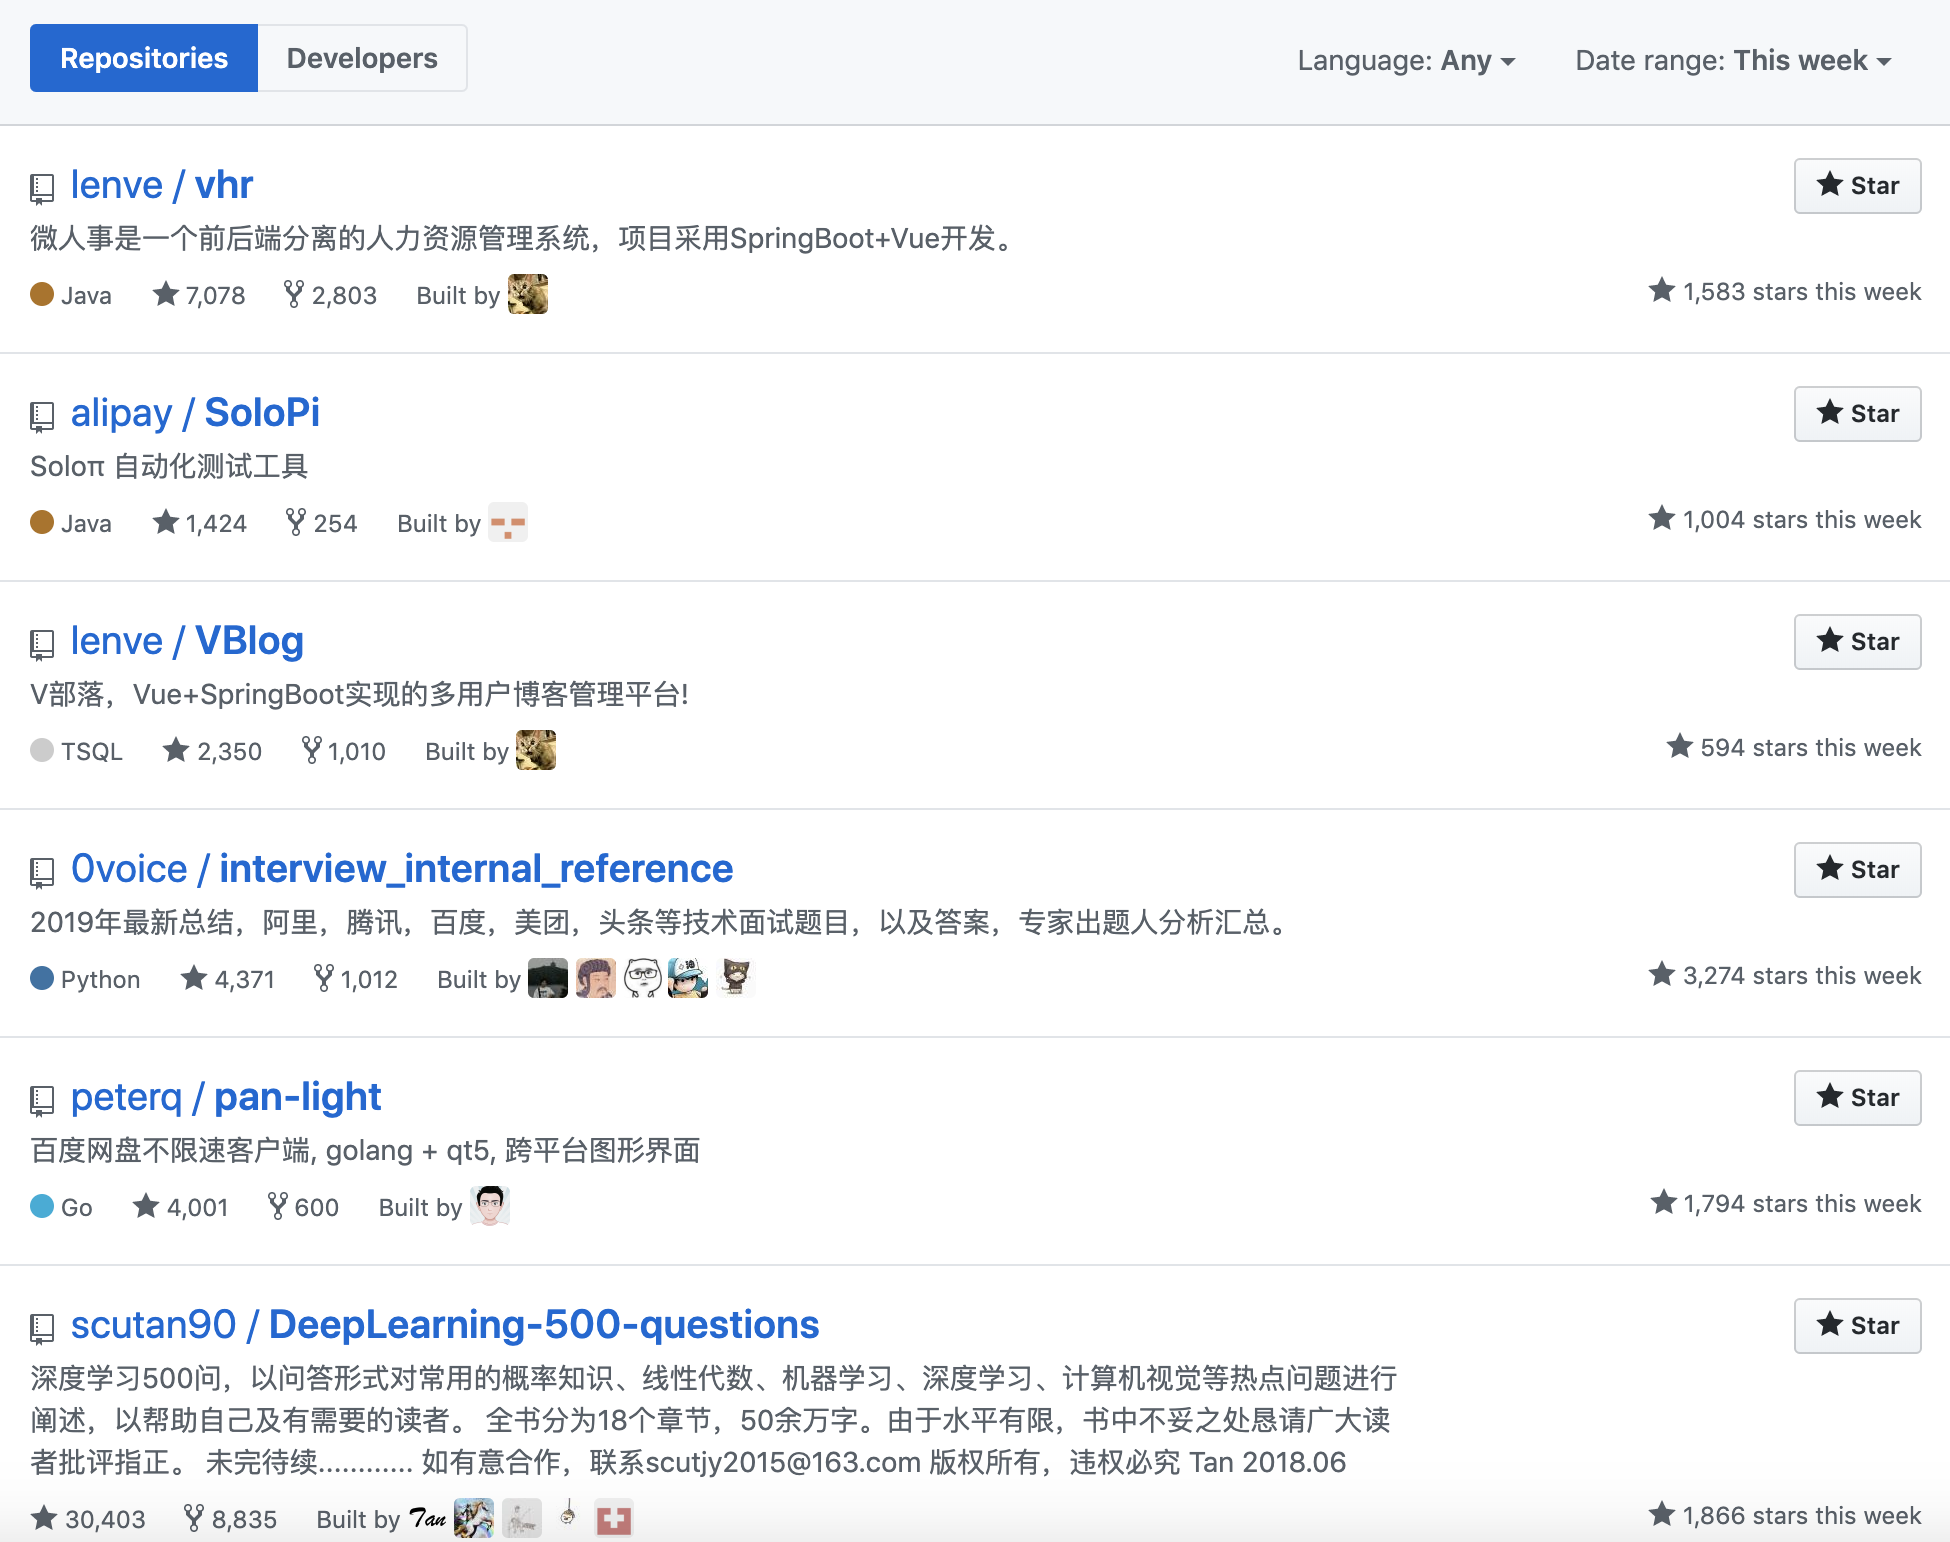 中国人霸榜GitHub Trending，国外开发者很无奈